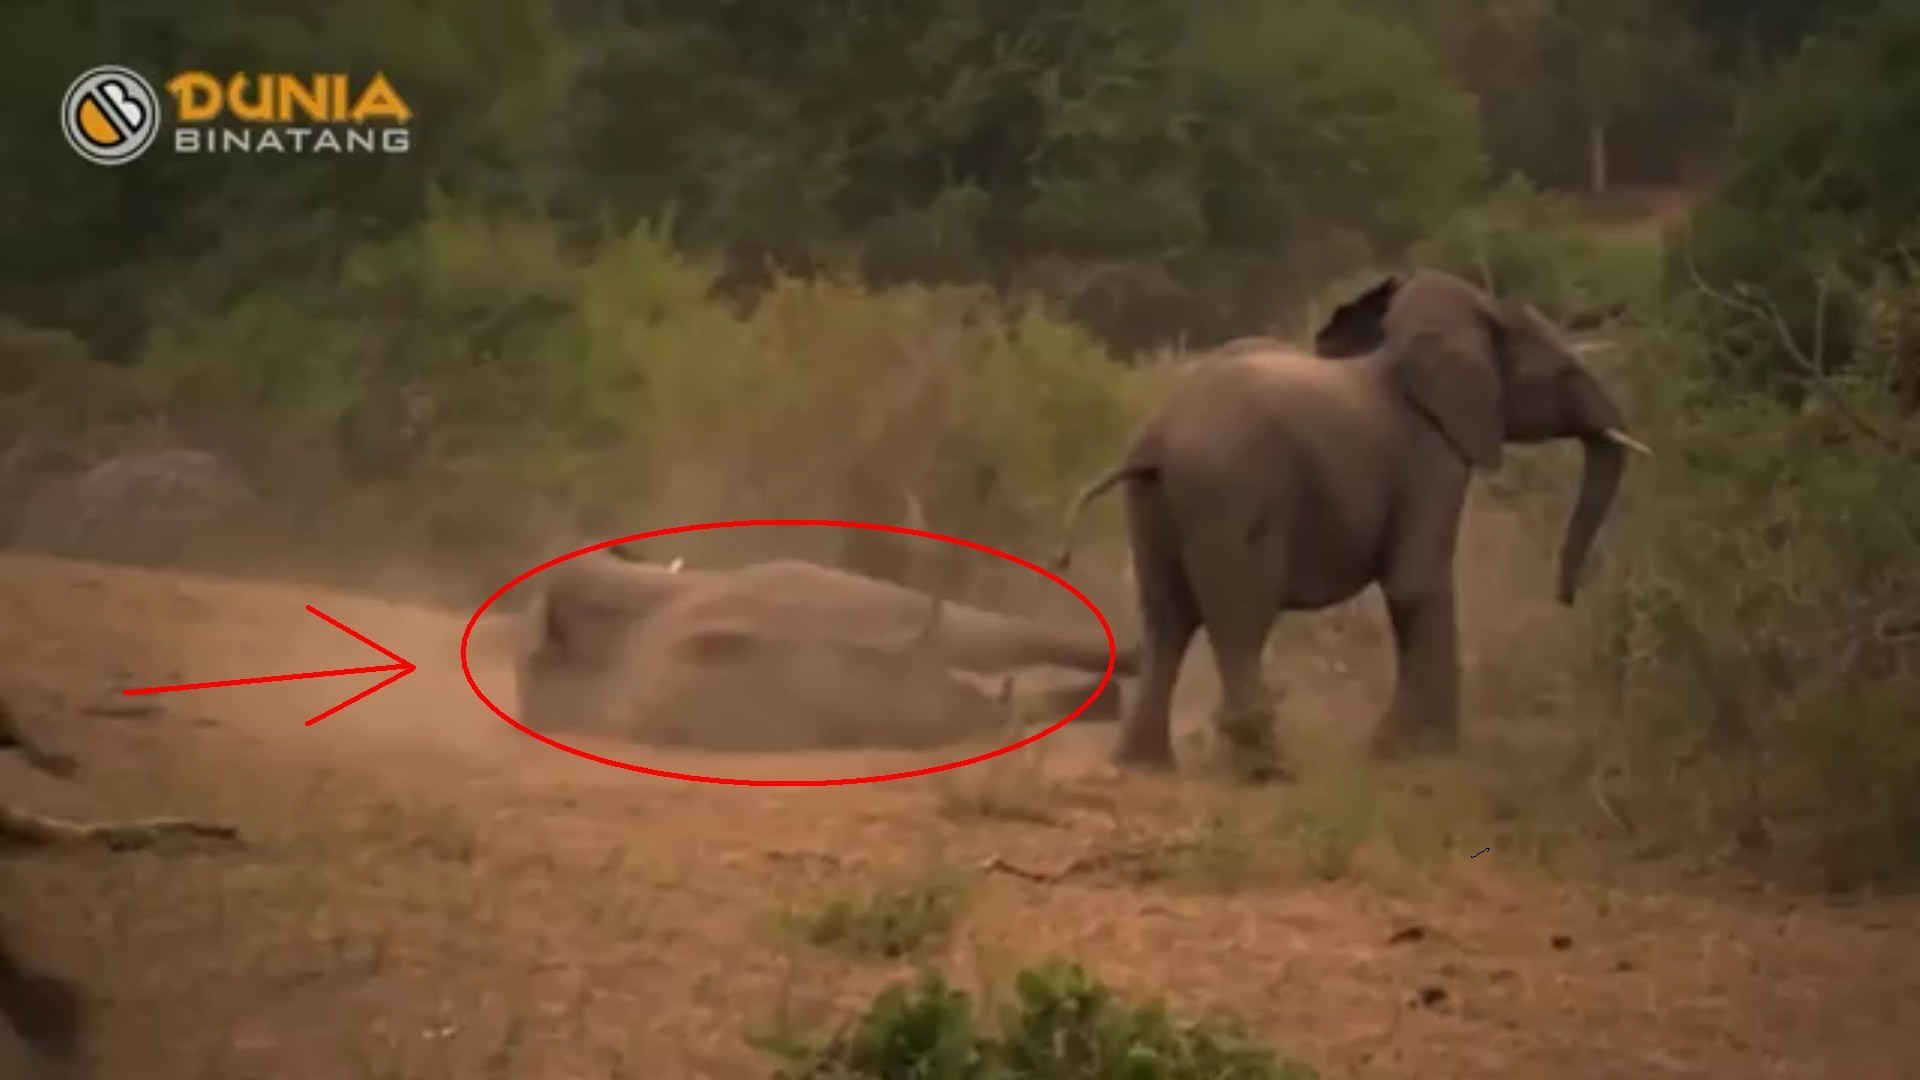 Lucu Banget Adegan Gajah Kawin Tapi Gagal Yang Bikin Ngakak